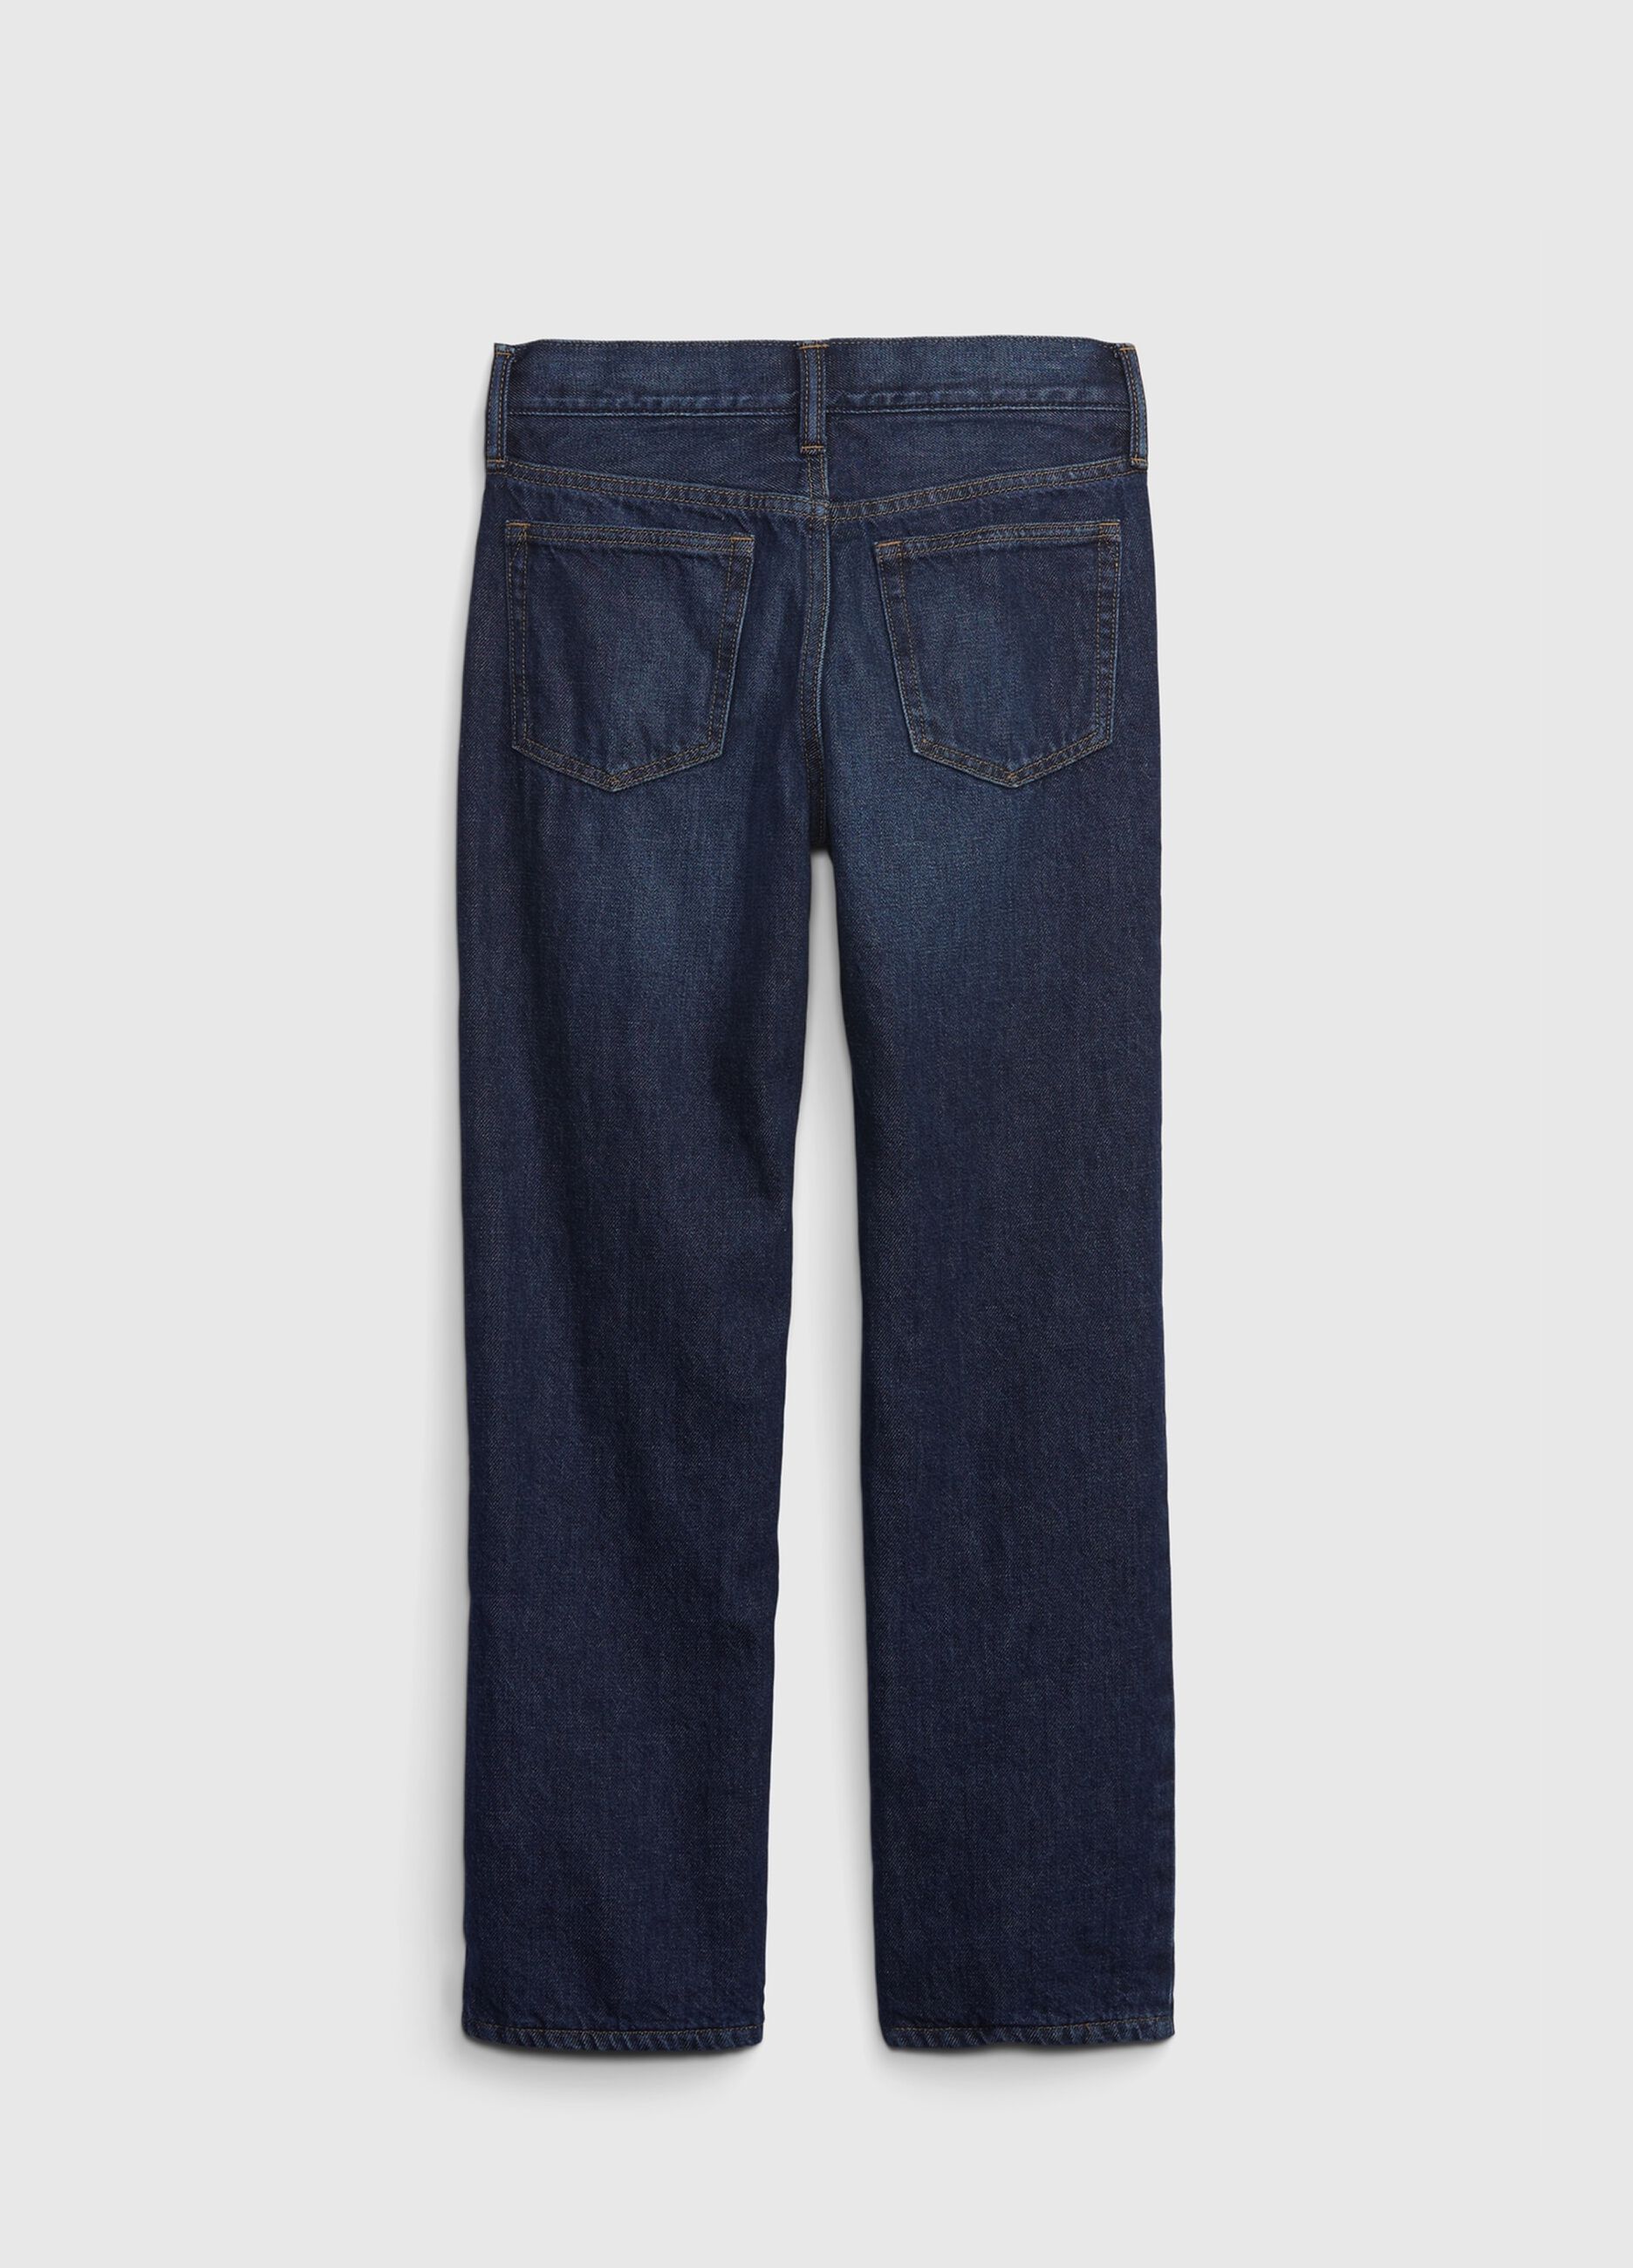 5-pocket, regular fit jeans.